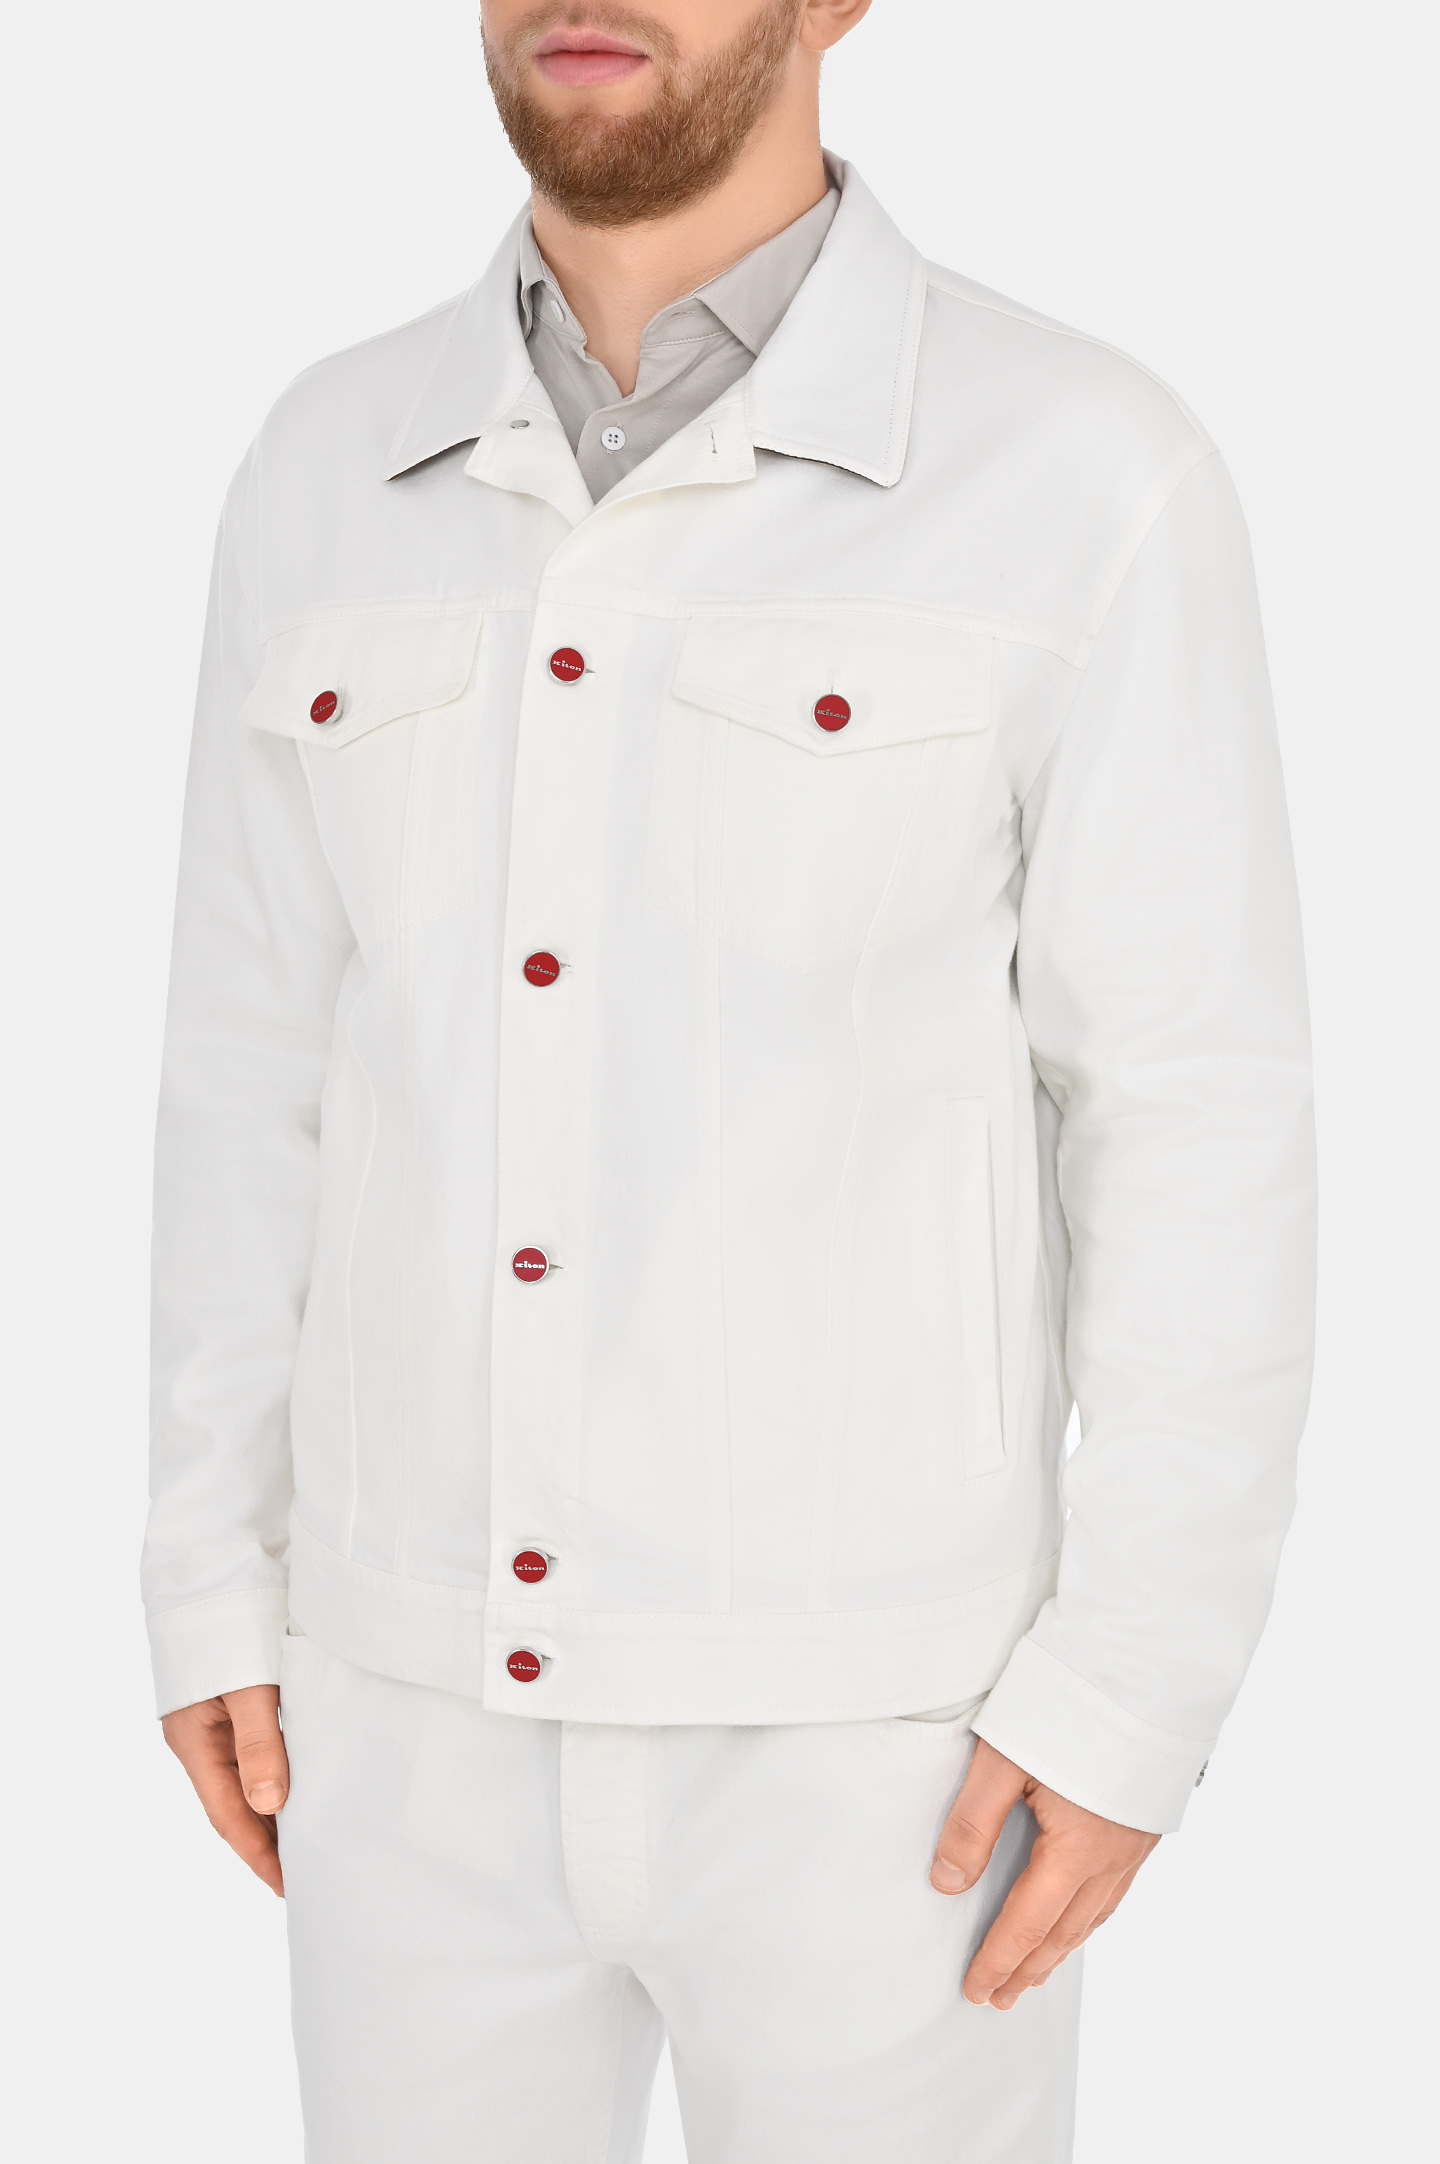 Джинсовая куртка с карманами KITON UW1700V0804C0, цвет: Белый, Мужской